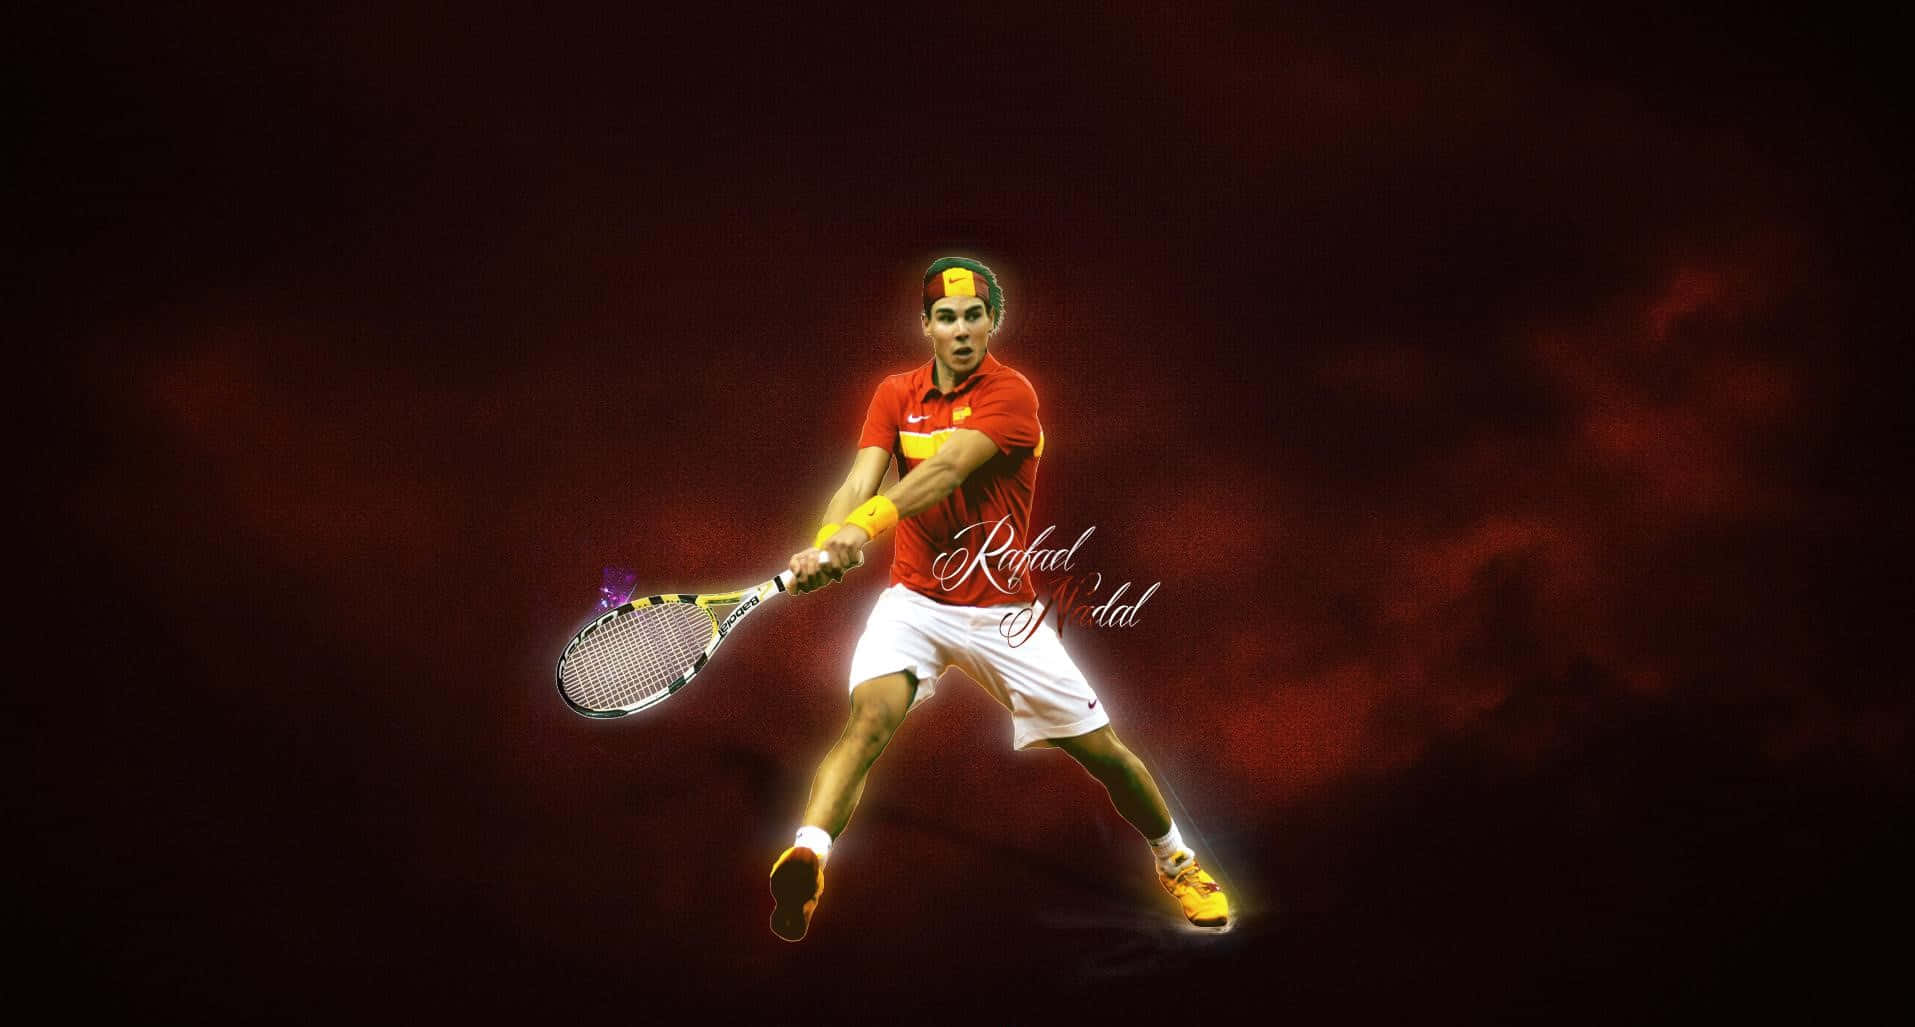 Papelde Parede Em Hd Do Jogador De Tênis Espanhol Rafael Nadal.